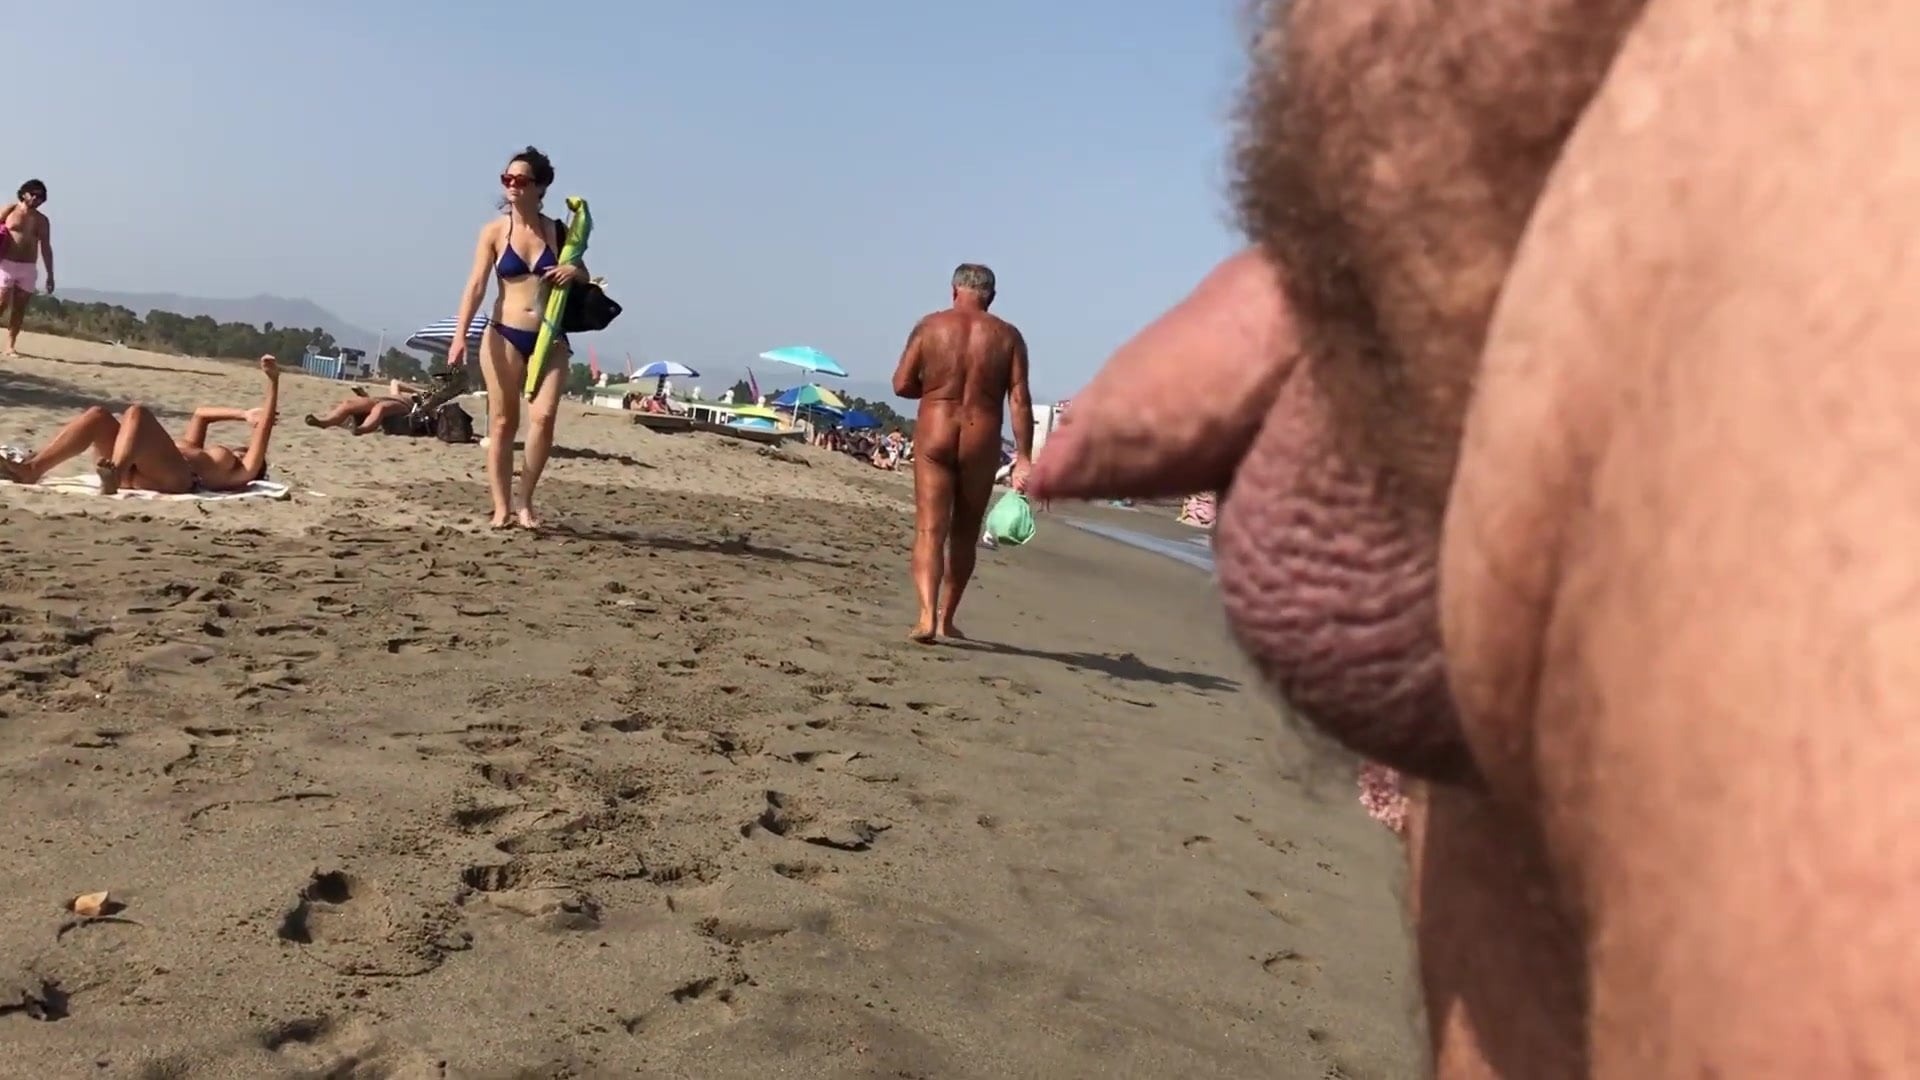 https://xhamster.monster/uploads/posts/2022-12/1670536194_88-xhamster-monster-p-porn-man-jerking-off-to-girls-on-the-beach-90.jpg